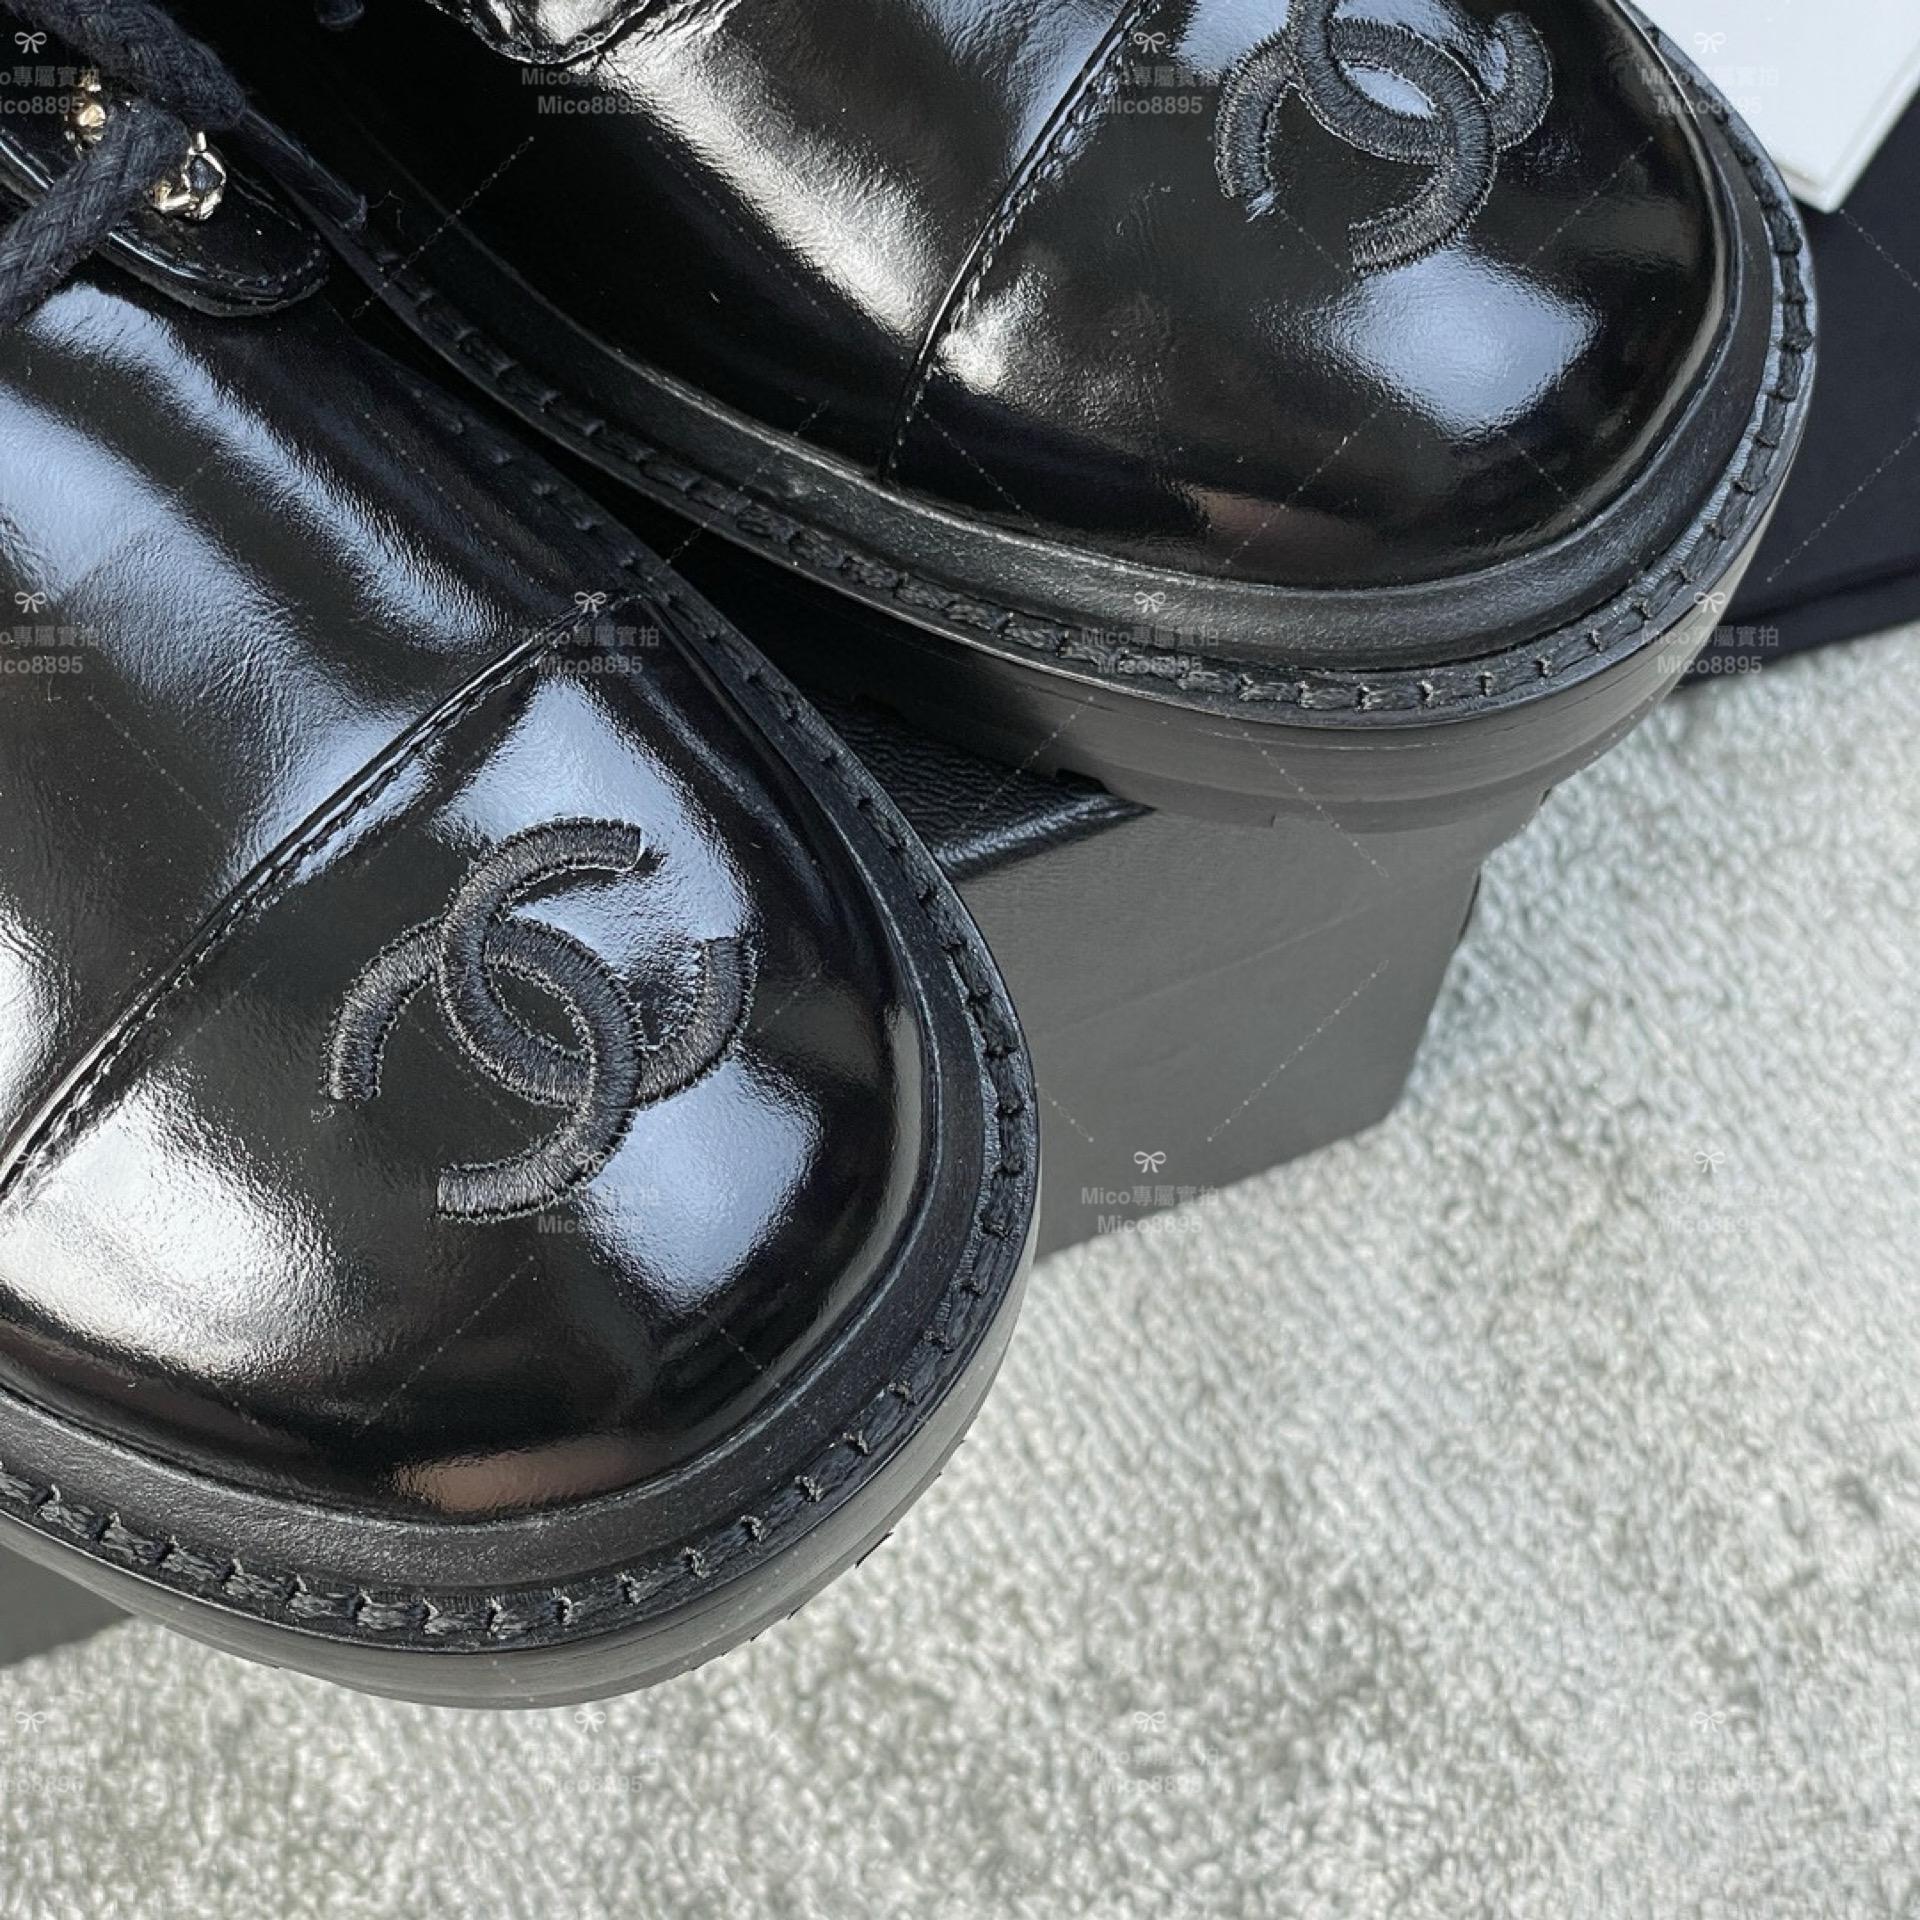 Chanel 經典菱格紋機車靴/短靴/ 黑色亮面牛皮 SIZE 35-39(可訂製40）